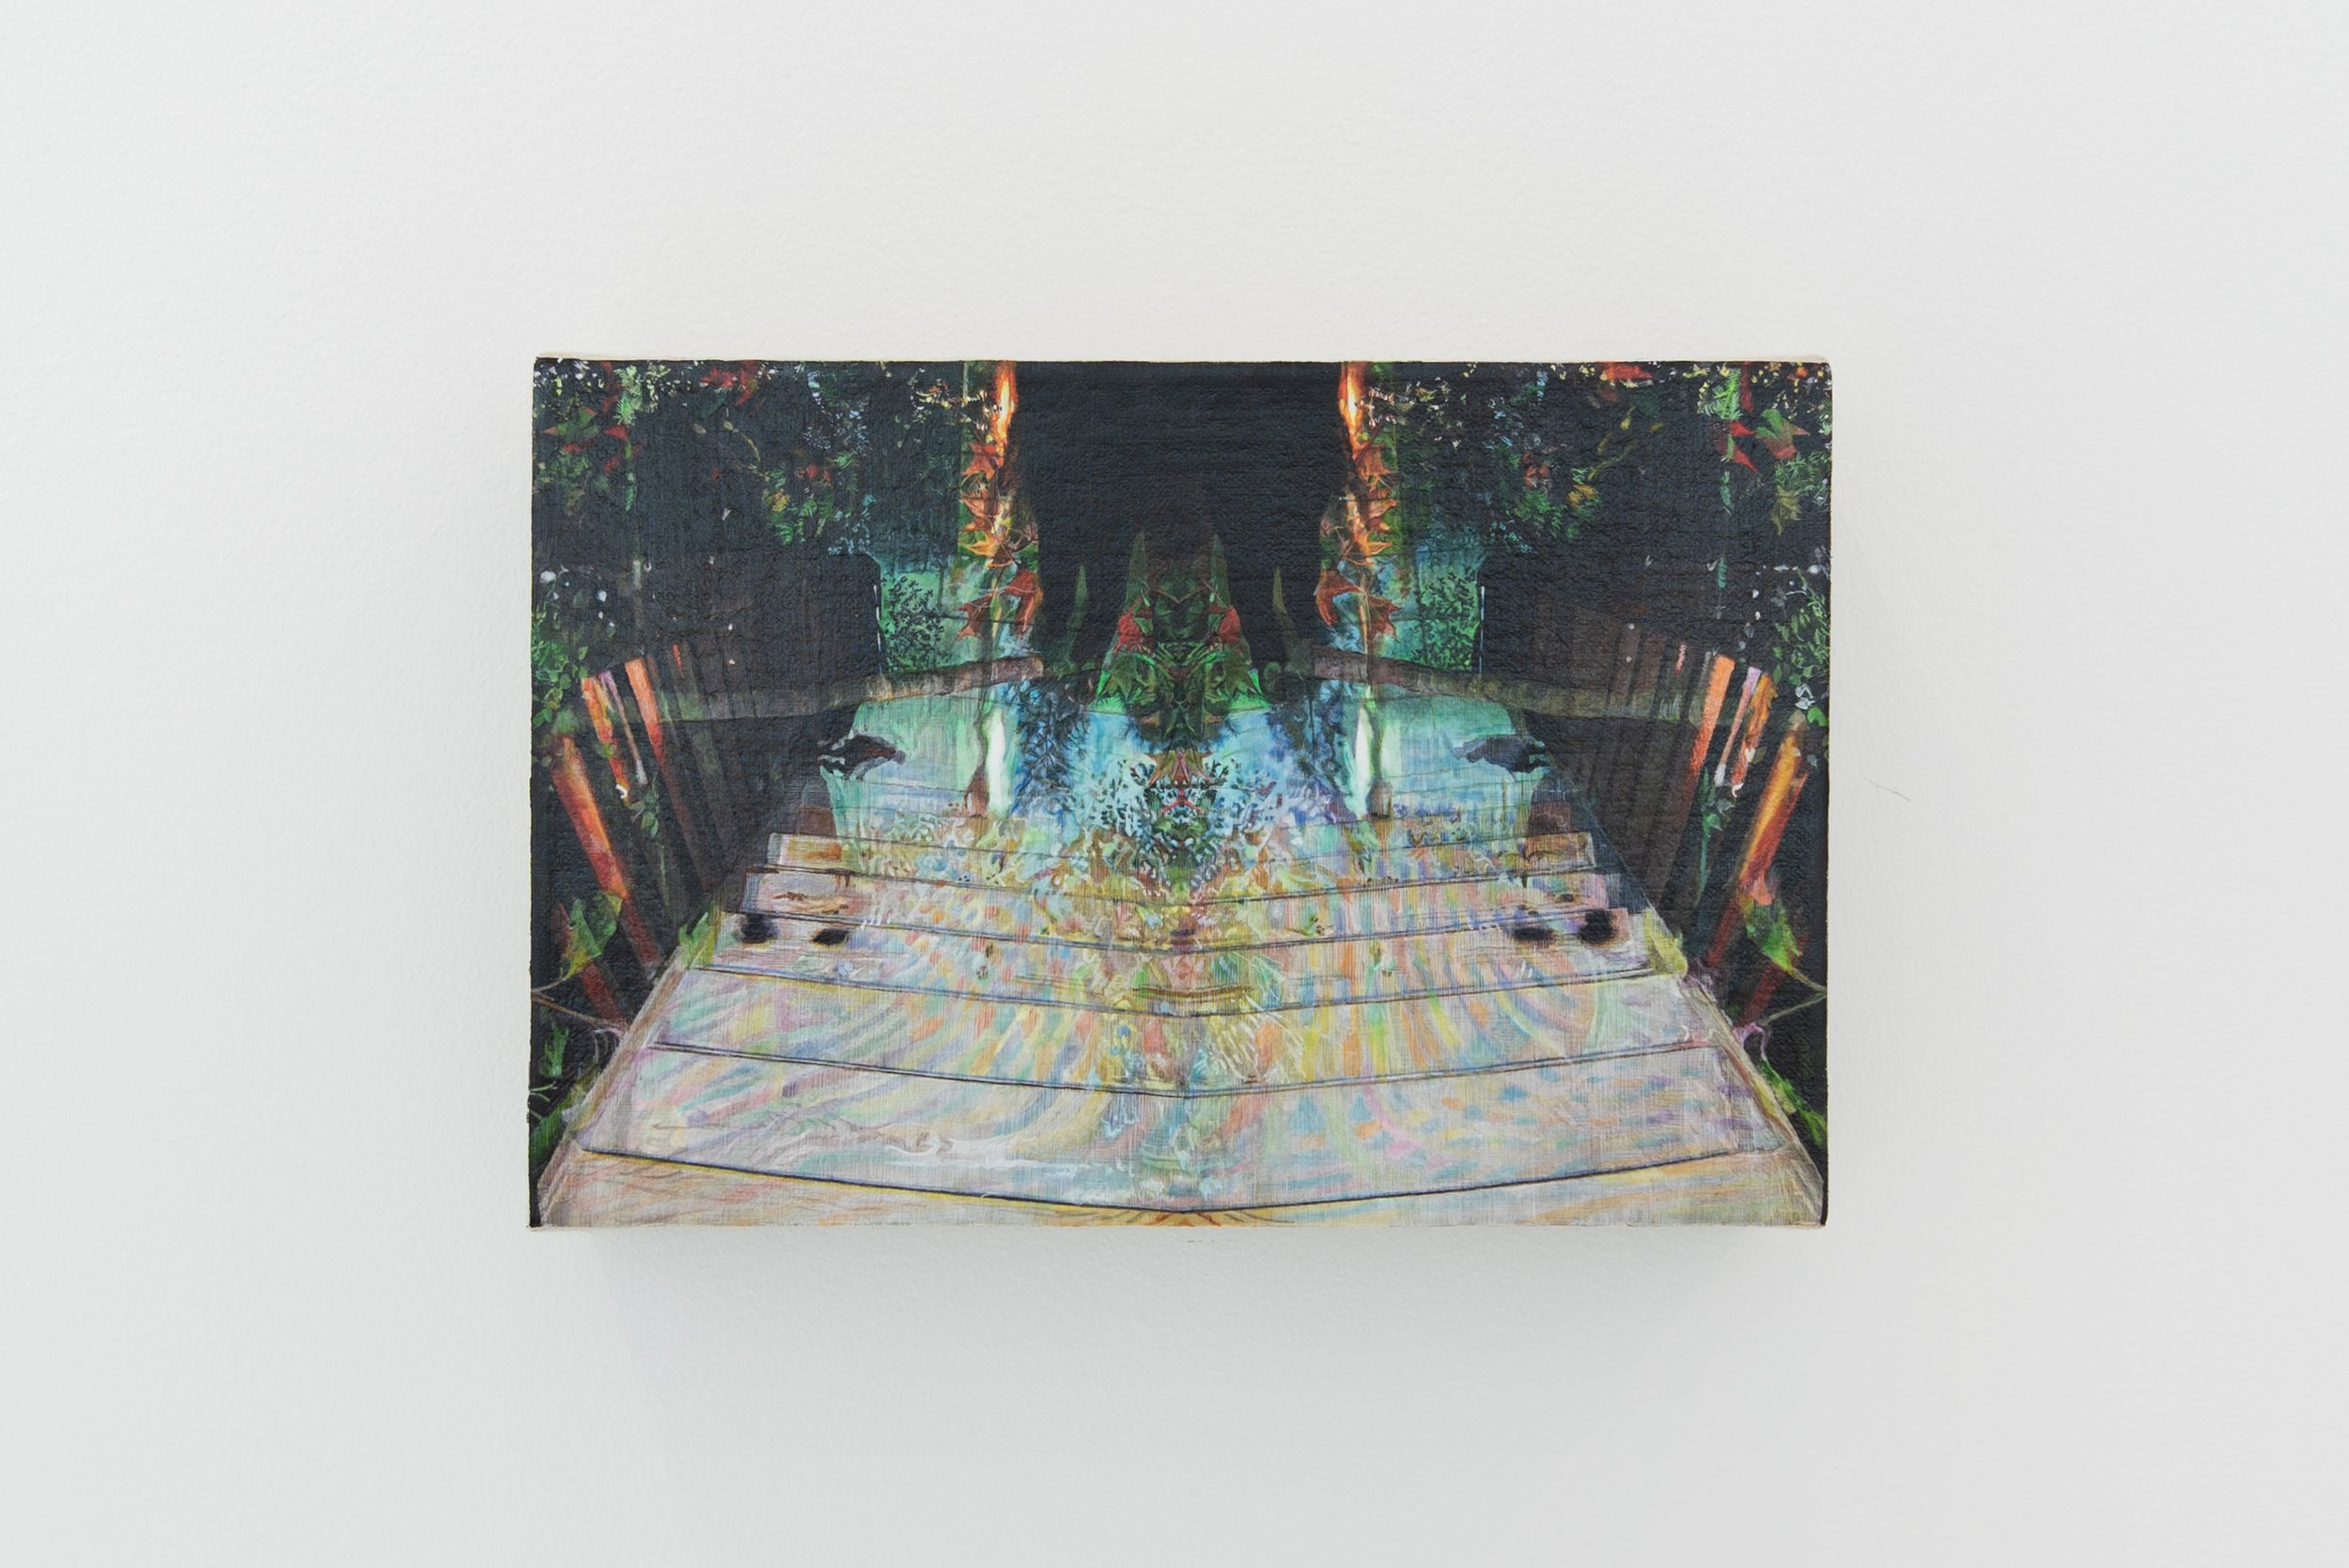   Suivre le Nord magnétique ,  Johannie Séguin , acrylique sur toile de lin, 5 x 7 ½ pouces, 2021  Crédit photo: Donald Trépanier 